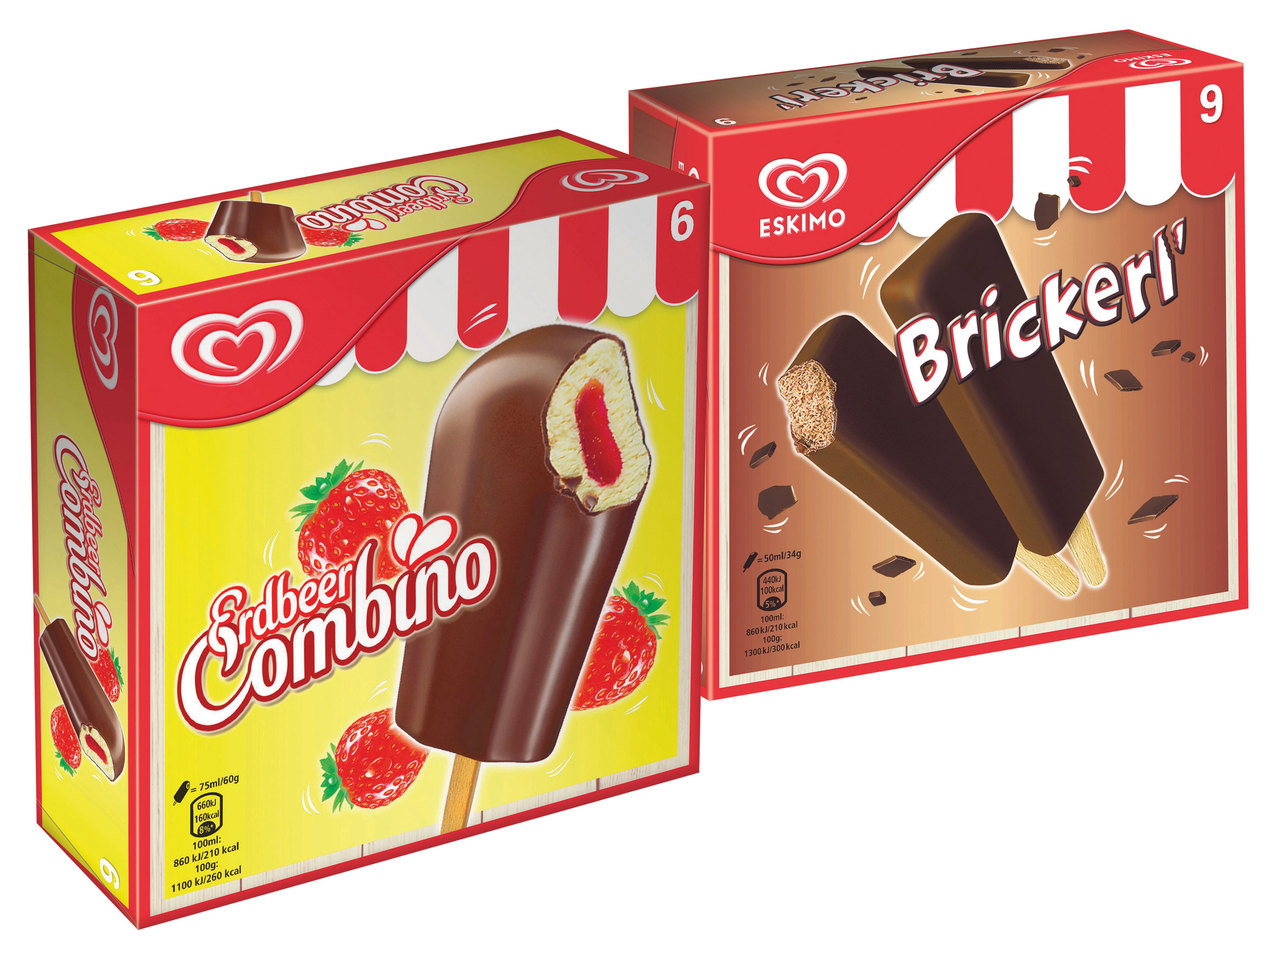 ESKIMO Erdbeer-Combino 6er, Brickerl 9er